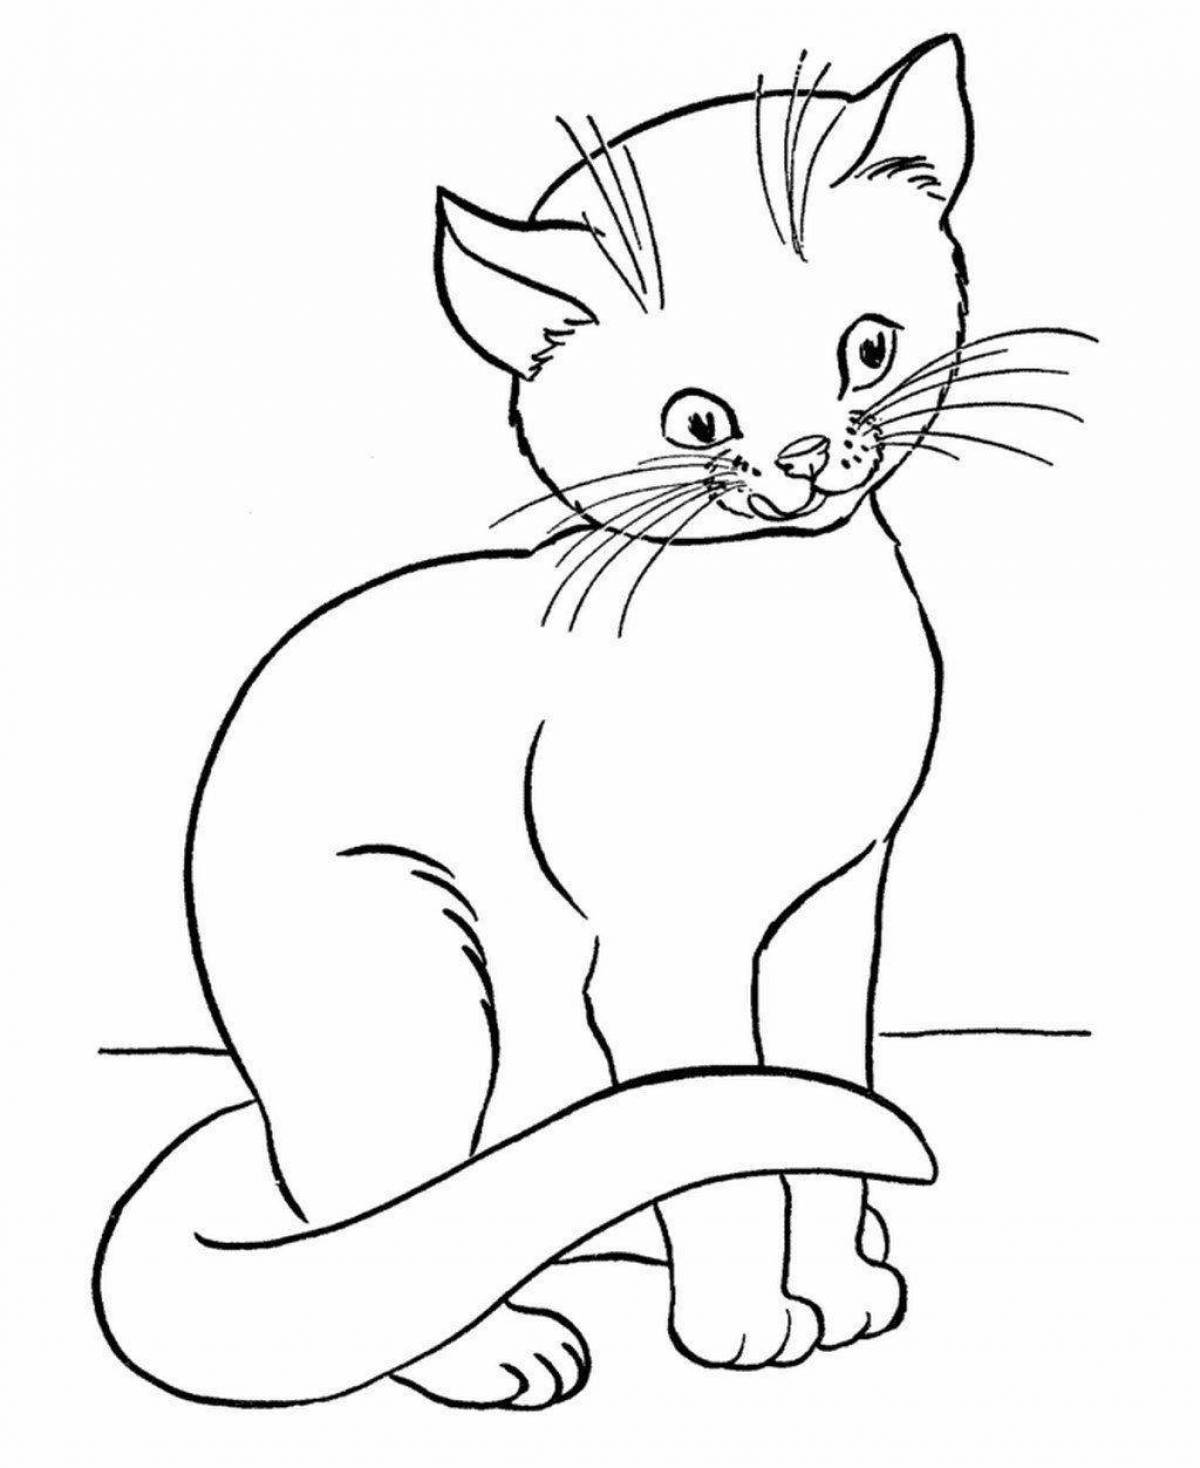 Игривая раскраска рисунок кота